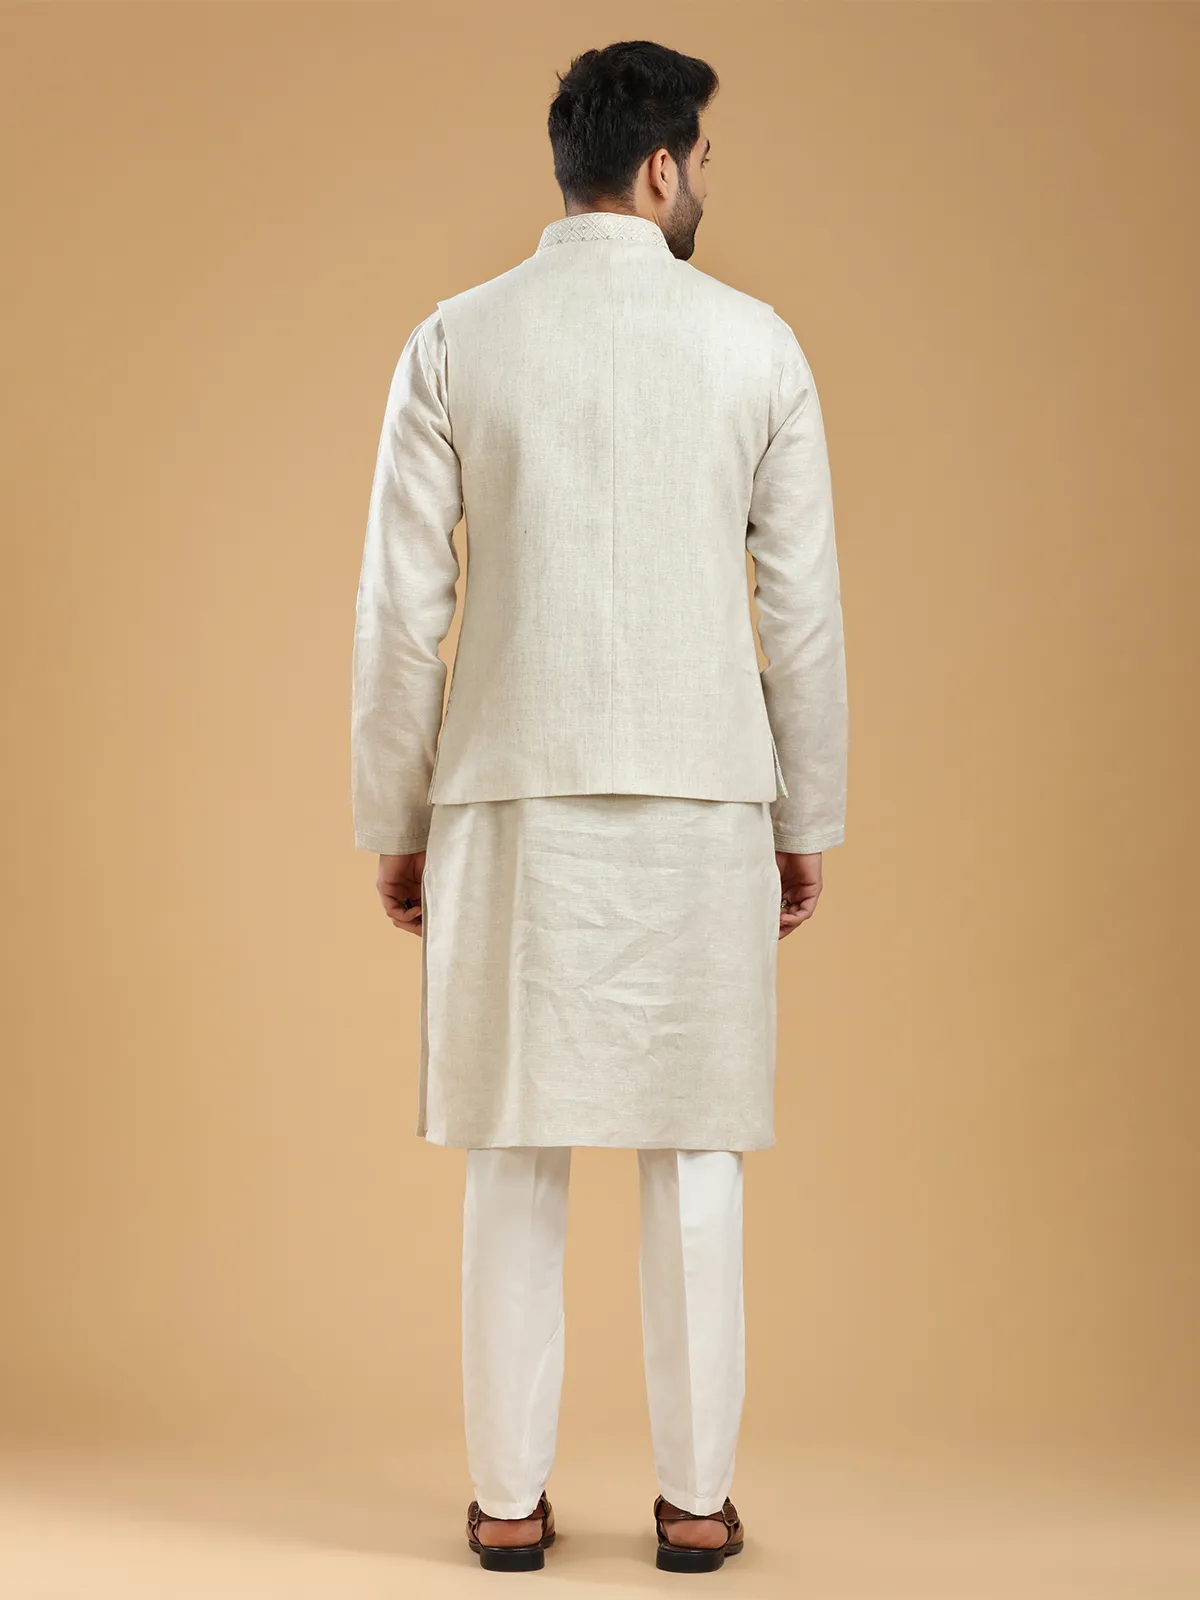 Classic beige waistcoat set in silk